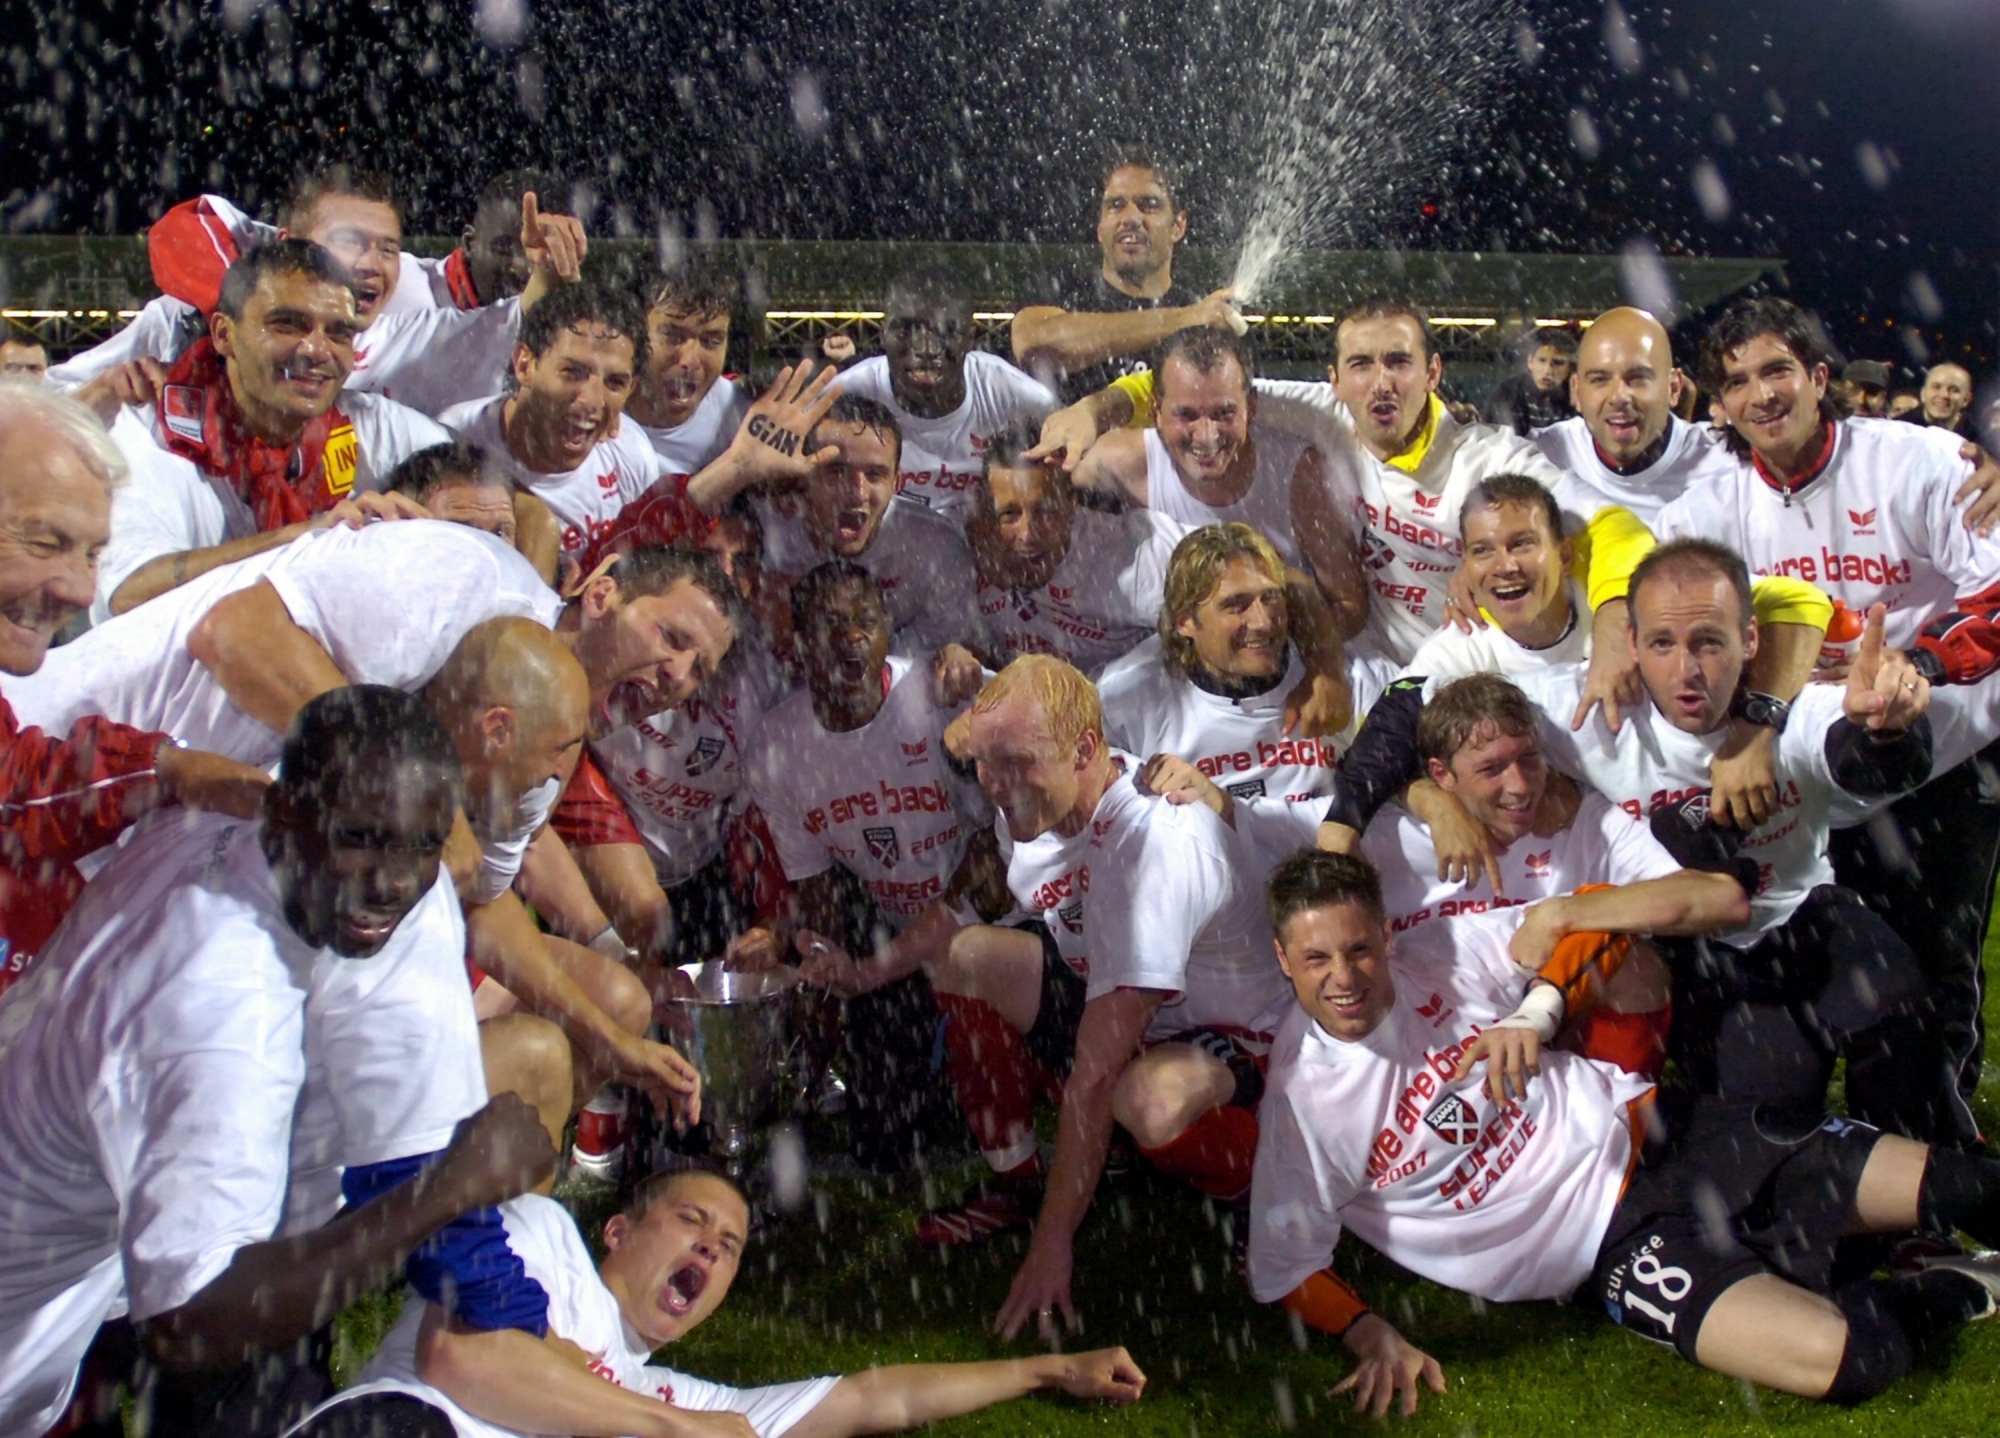 Das Team von Neuchatel Xamax feiert seinen B-Meistertitel und den Aufstieg in die Super League nach dem Fussballspiel der Challenge League zwischen dem AC Lugano und Neuchatel Xamax, am Samstag, 26. Mai 2007, im Cornaredo Stadion in Lugano. Die Neuenburger gewannen das Spiel 1-3. (KEYSTONE/Karl Mathis) SCHWEIZ FUSSBALL LUGANO XAMAX